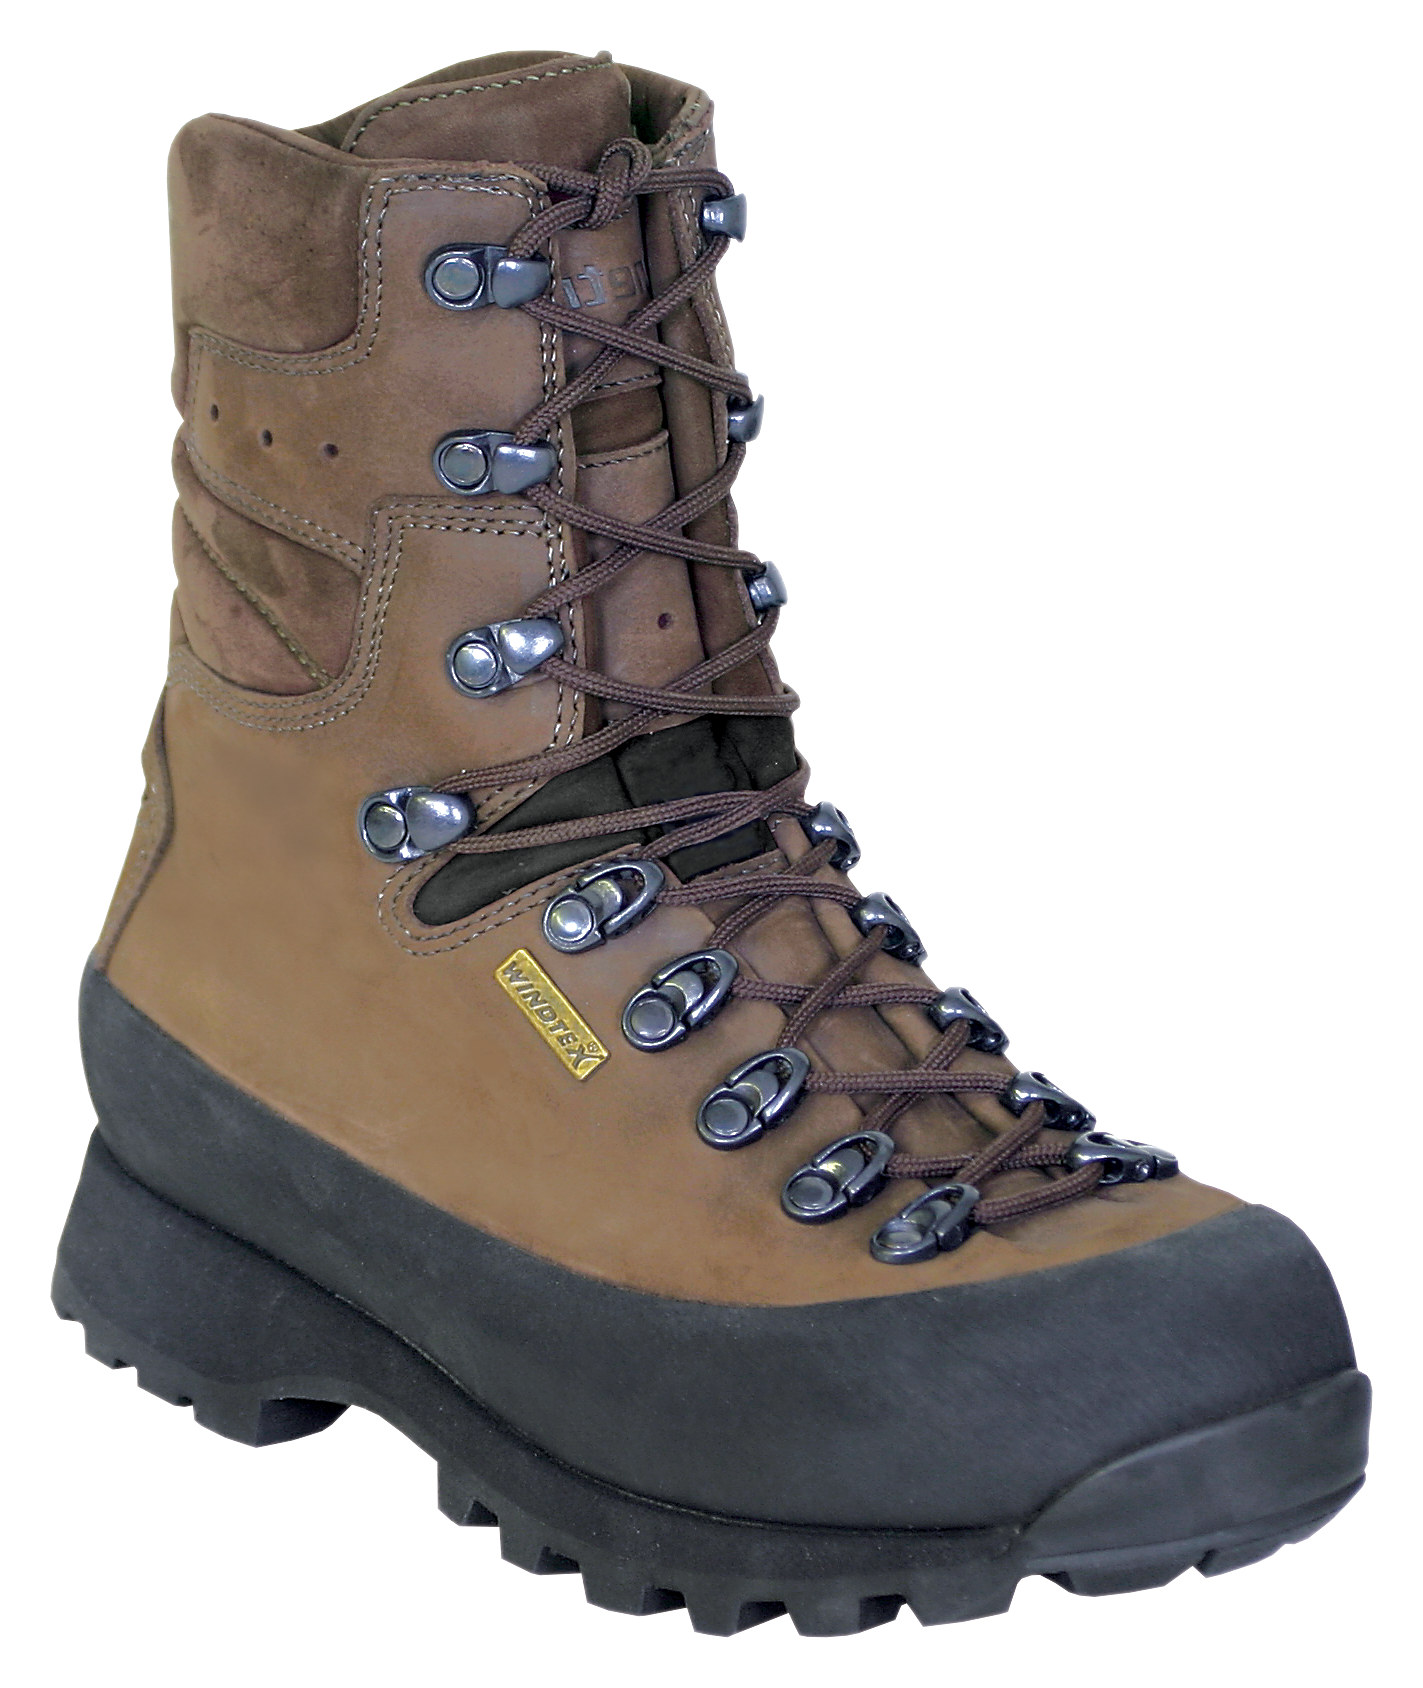 Kenetrek Hiker Waterproof Hiking Boots for Ladies - Brown -  9 5M